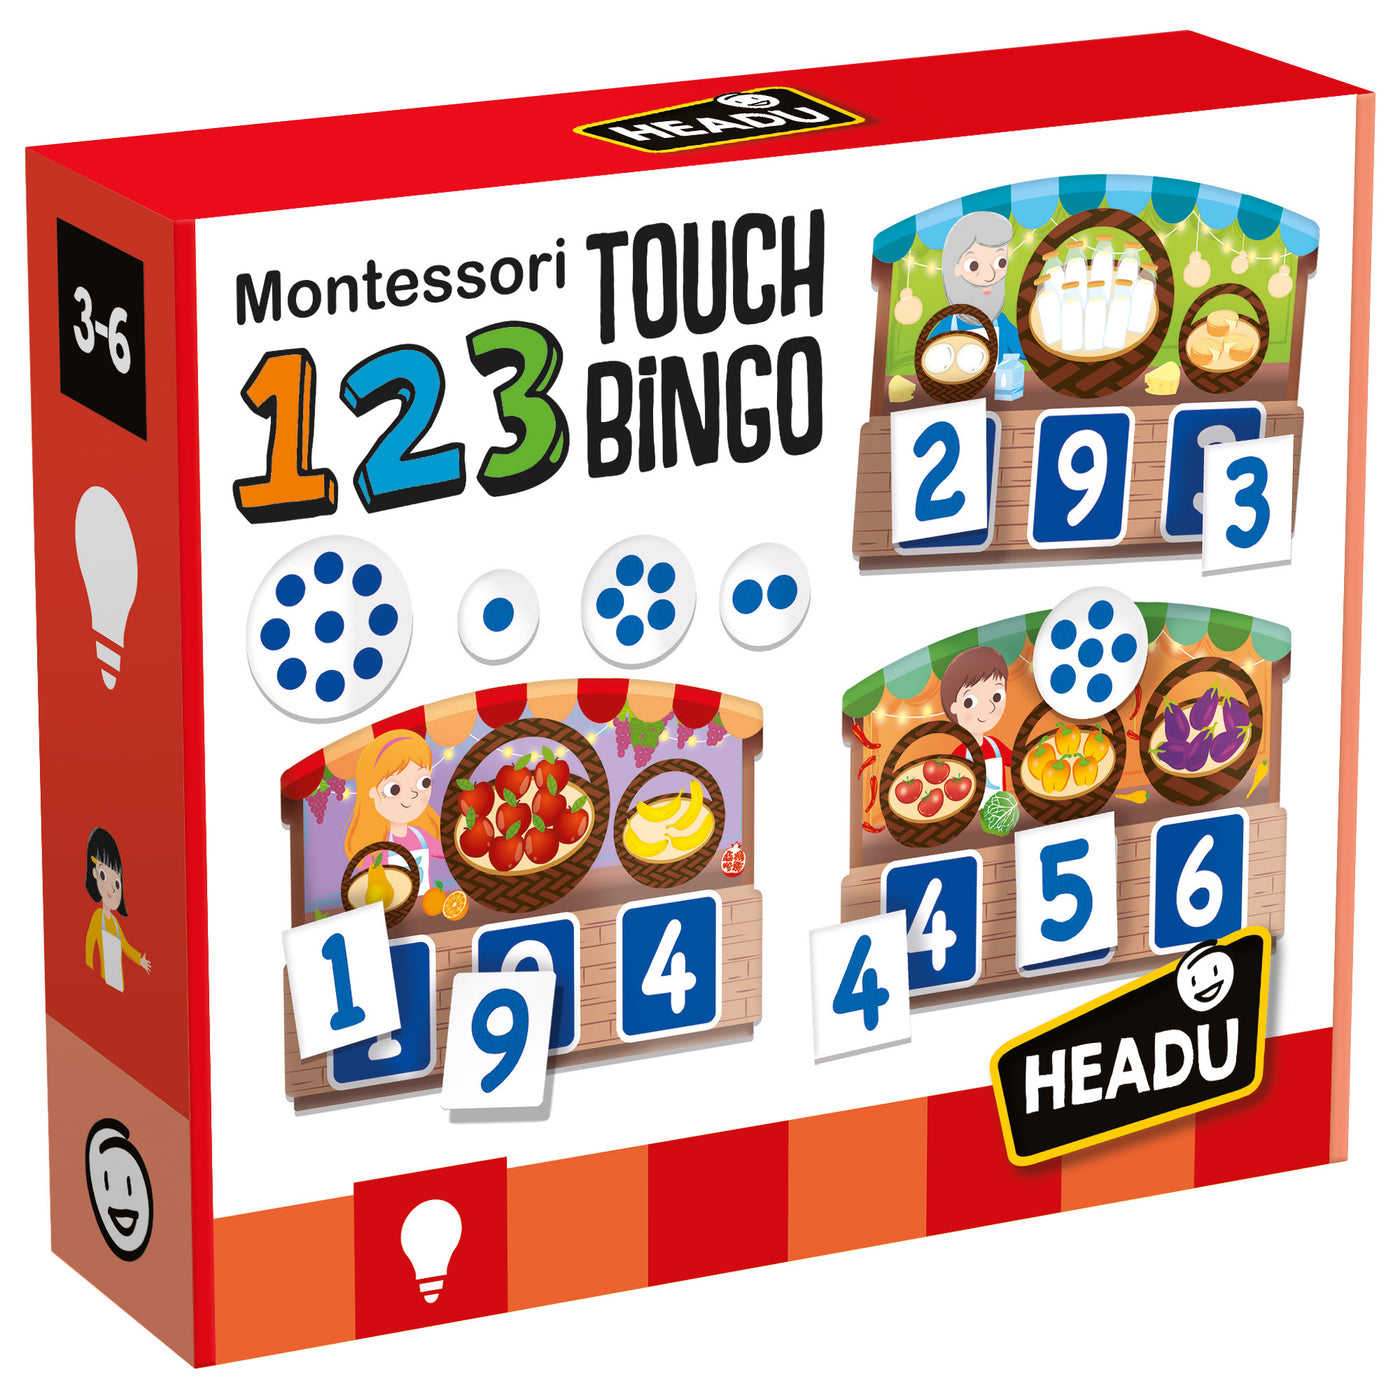 123 Touch Bingo (Montessori)